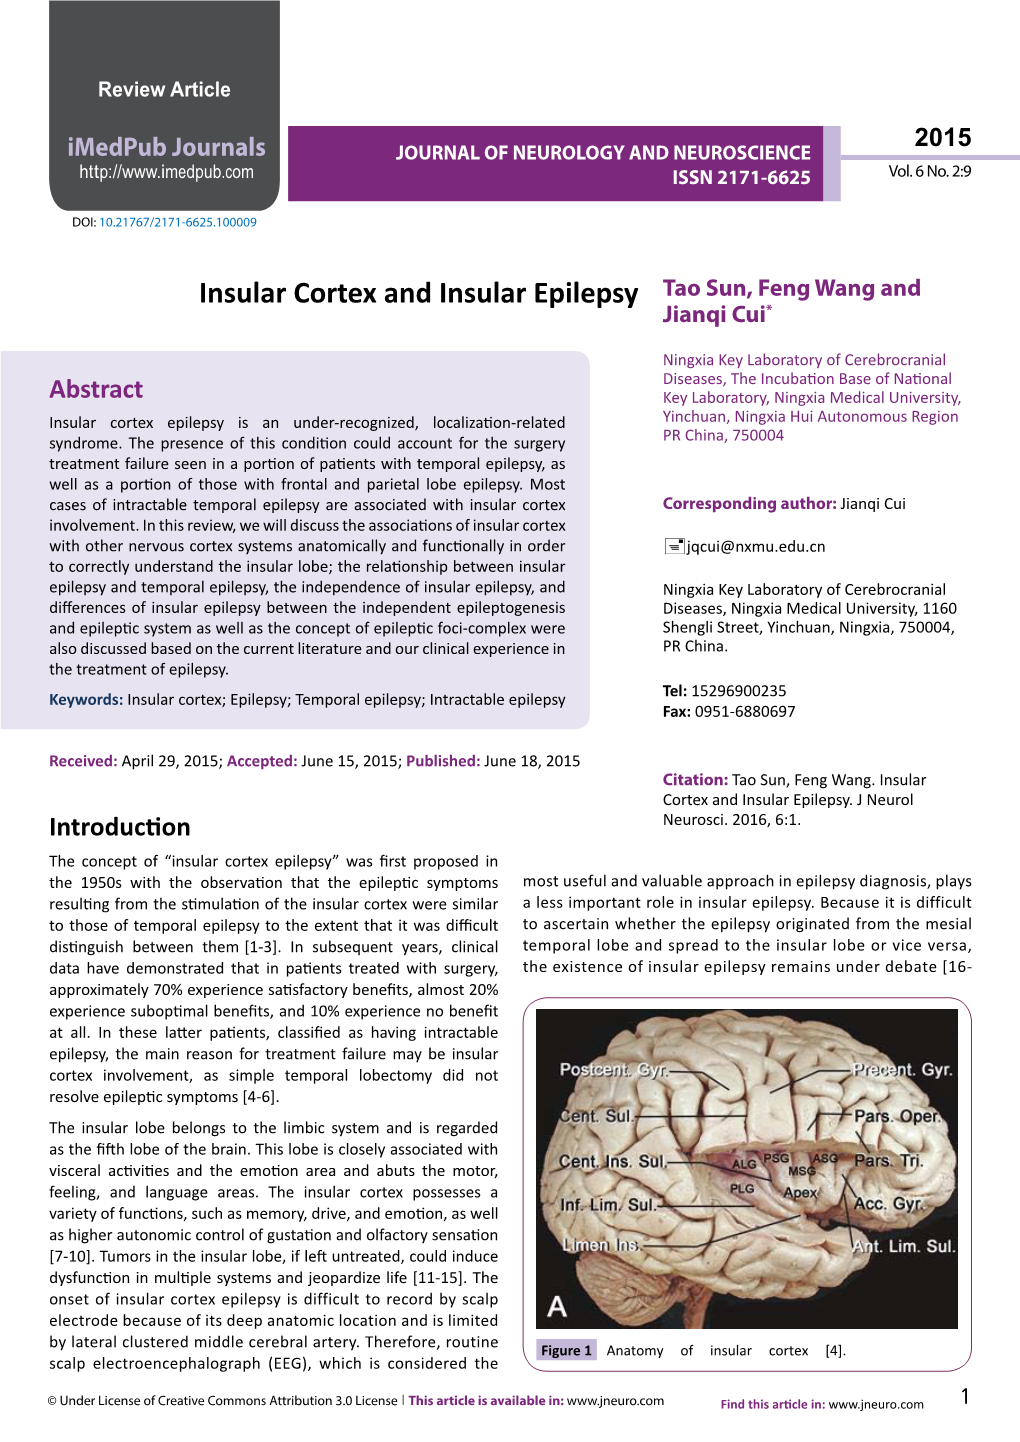 Insular Cortex and Insular Epilepsy Tao Sun, Feng Wang and Jianqi Cui*